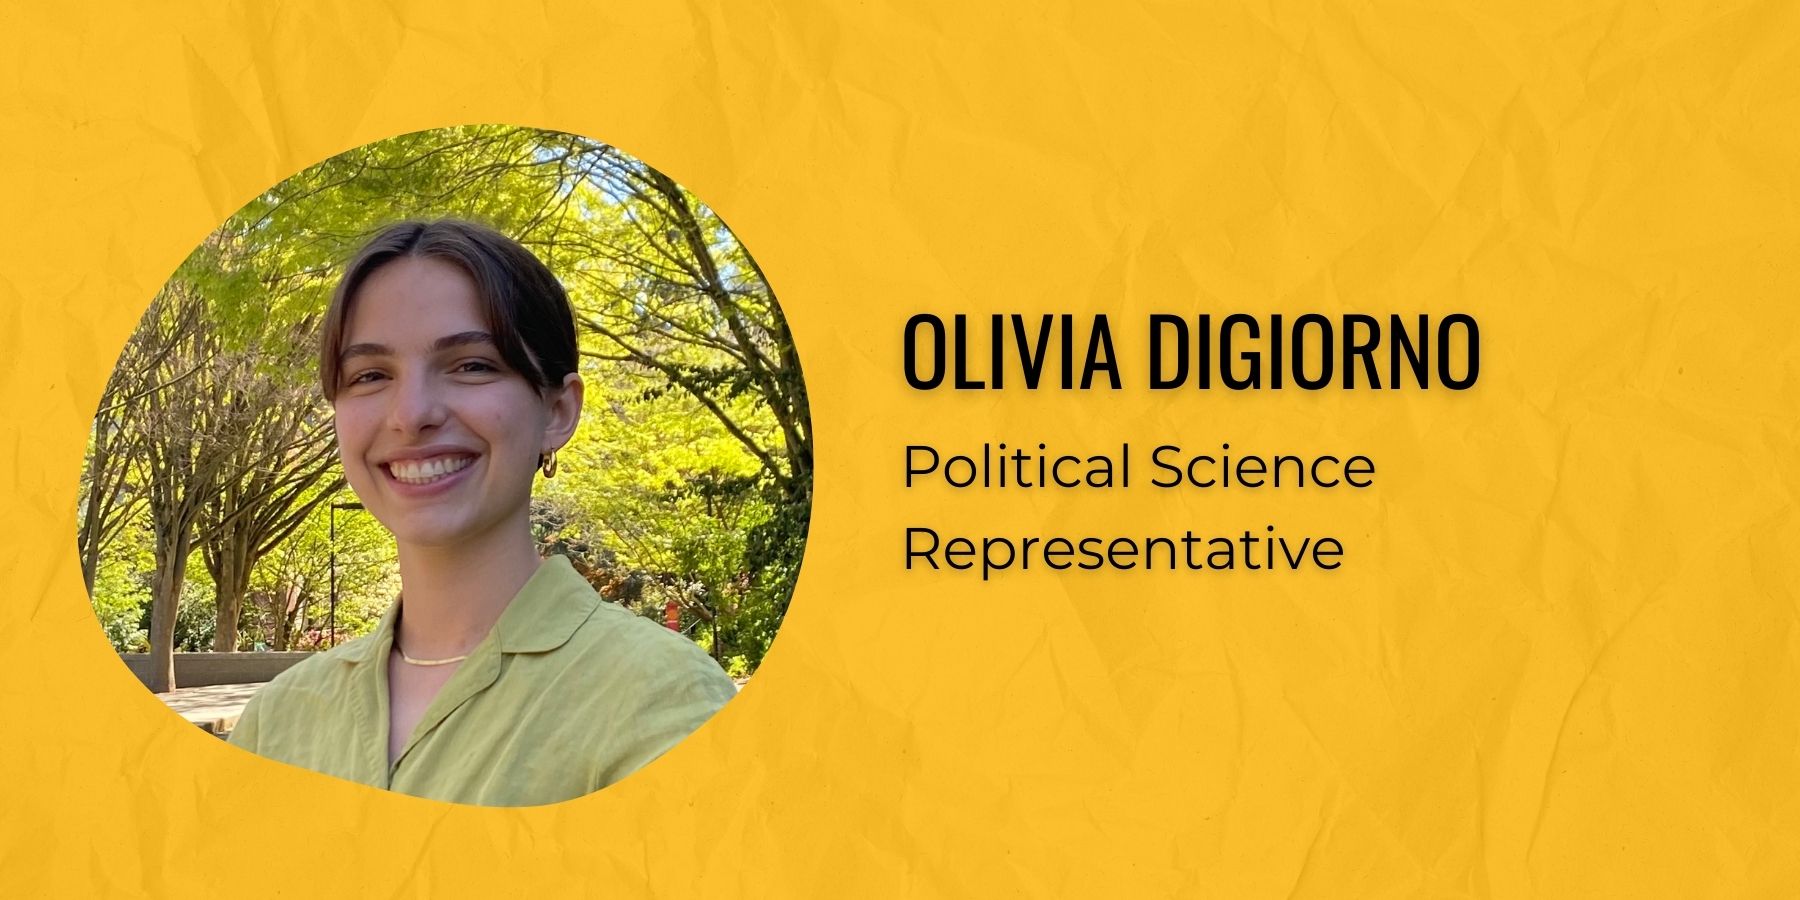 Photo of Olivia Digiorno and text: Political Science Representative